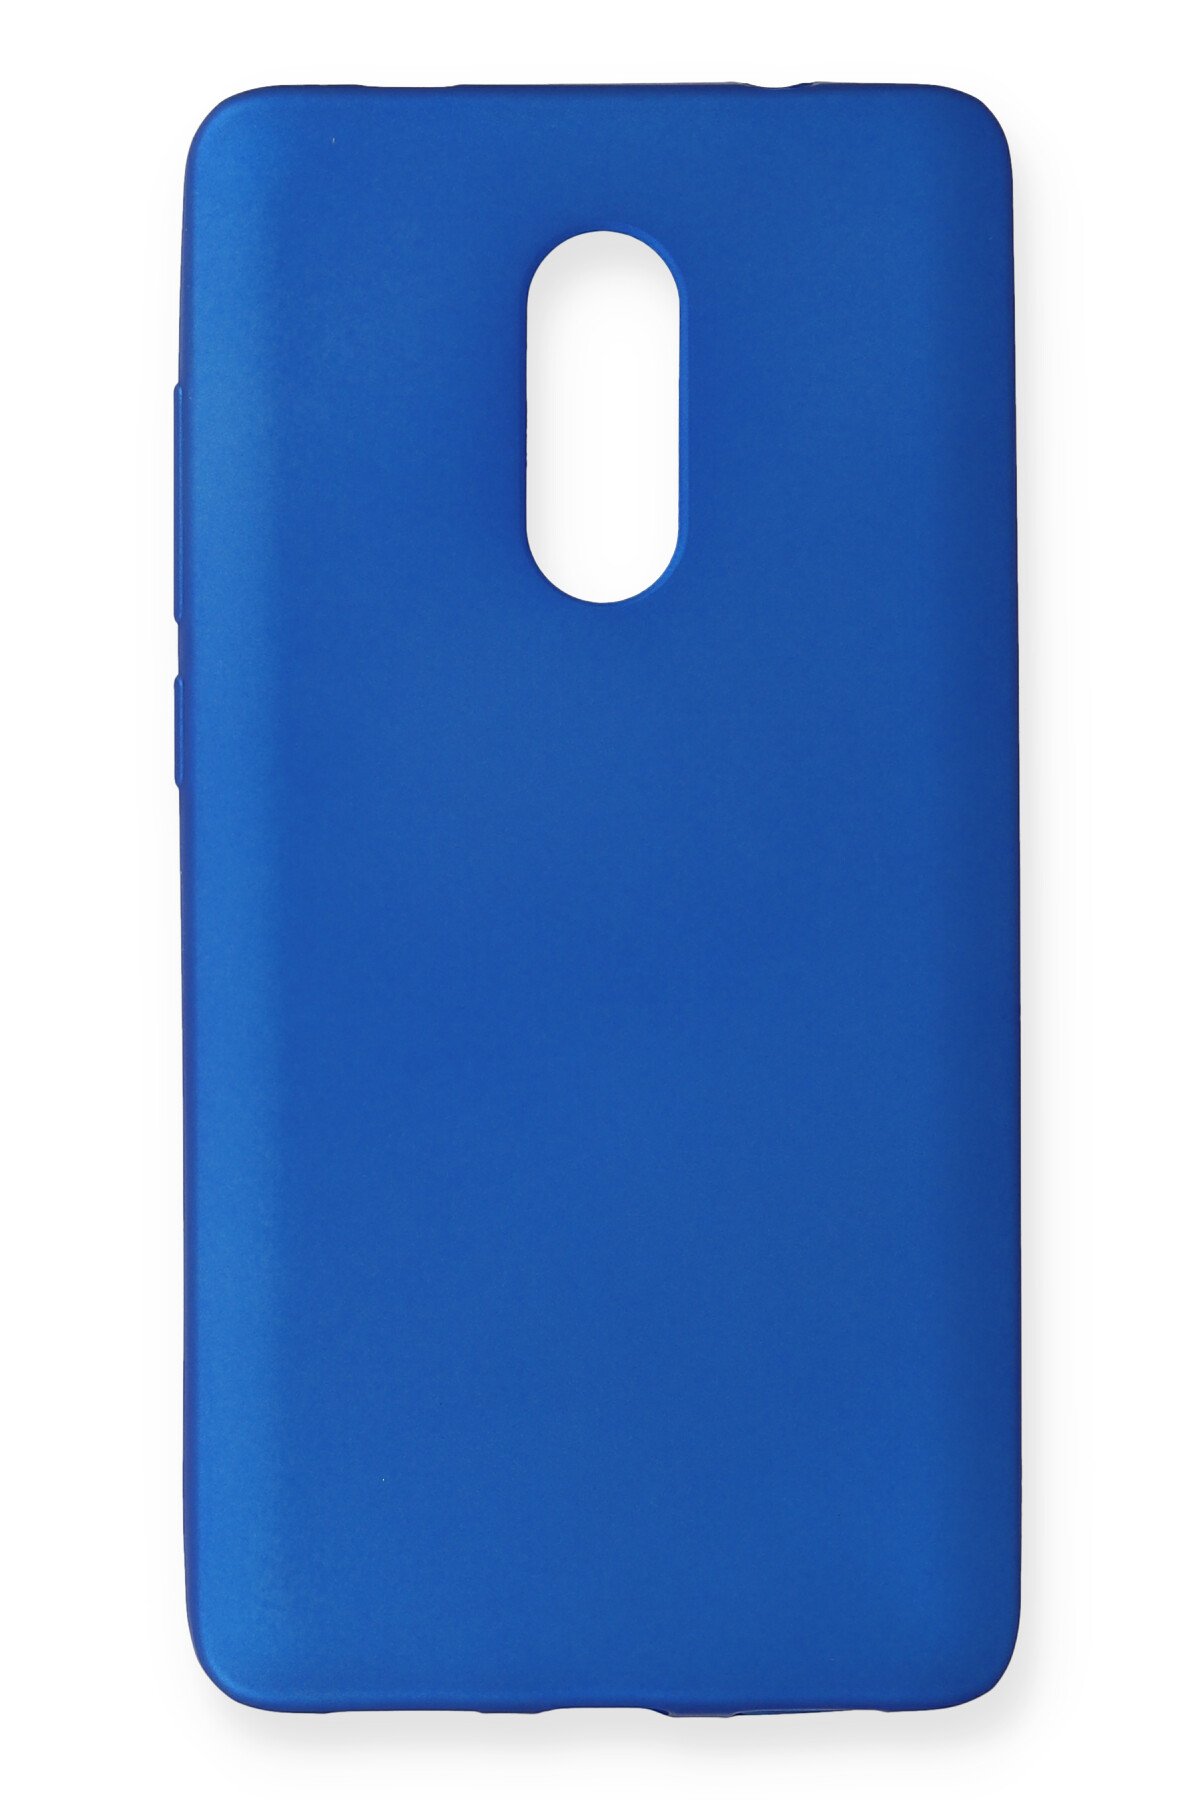 Newface Xiaomi Redmi Note 4X Temperli Cam Ekran Koruyucu